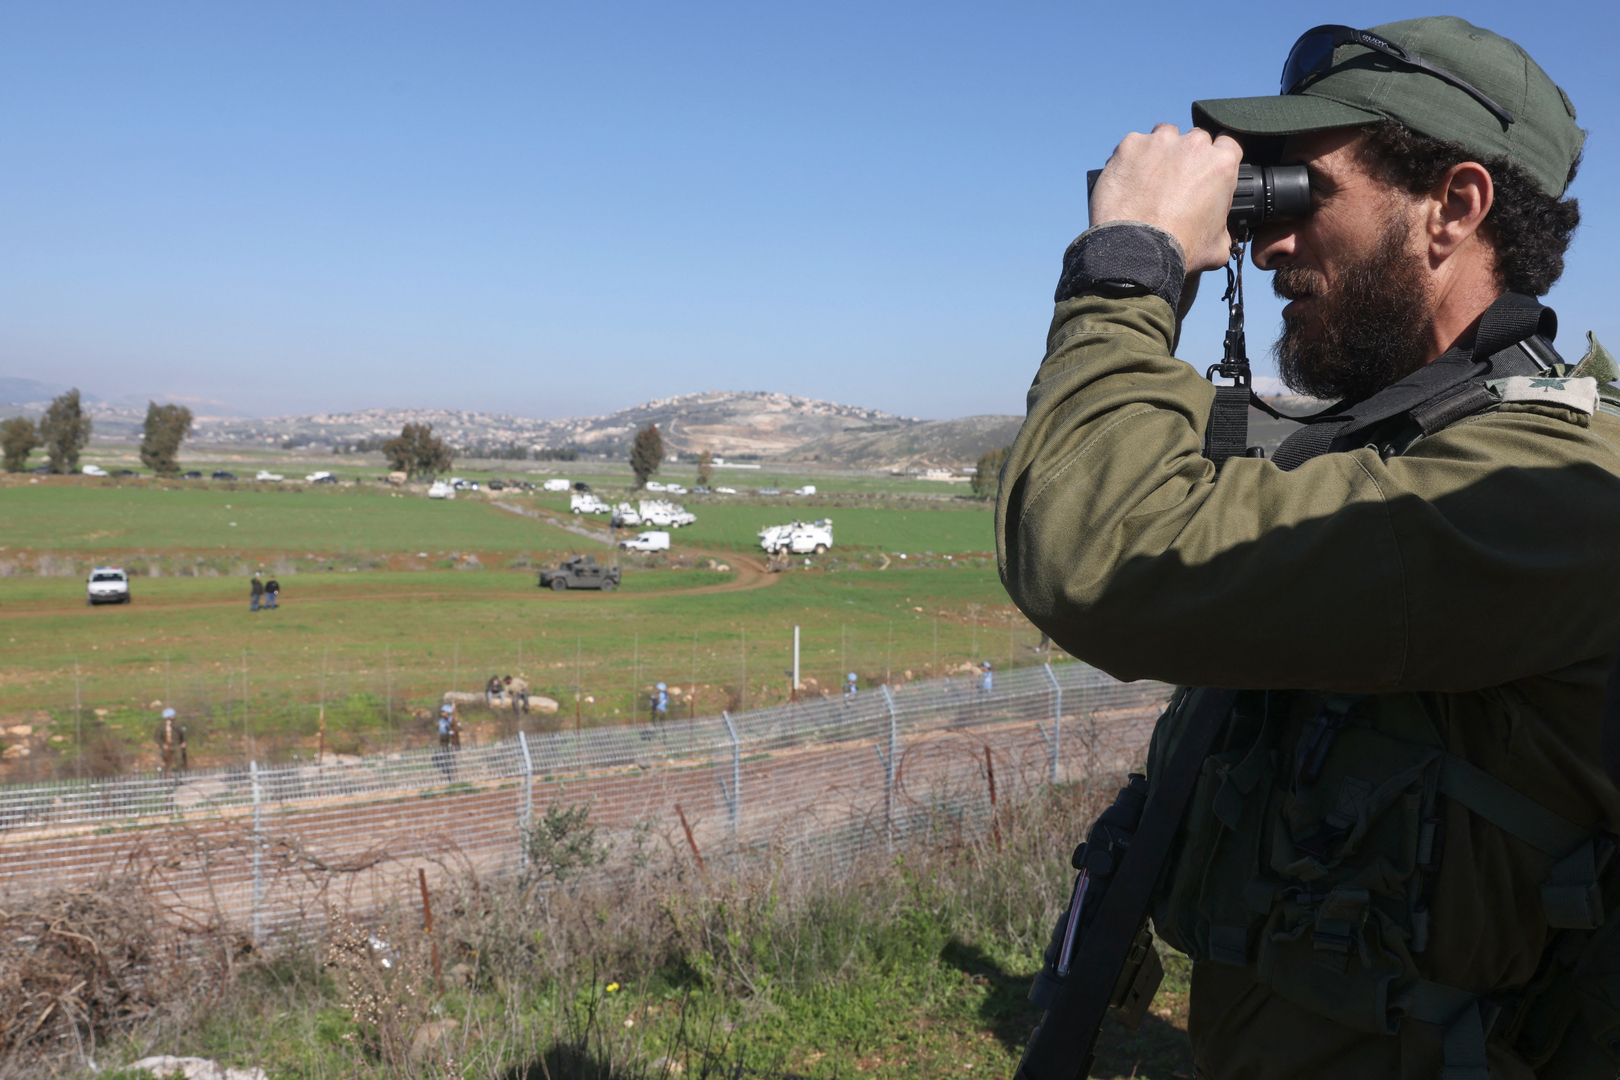 الجيش الإسرائيلي يعترف بالفشل: مشتبه به يتسلل إلى لبنان نتيجة خطأ بشري وخلل تقني